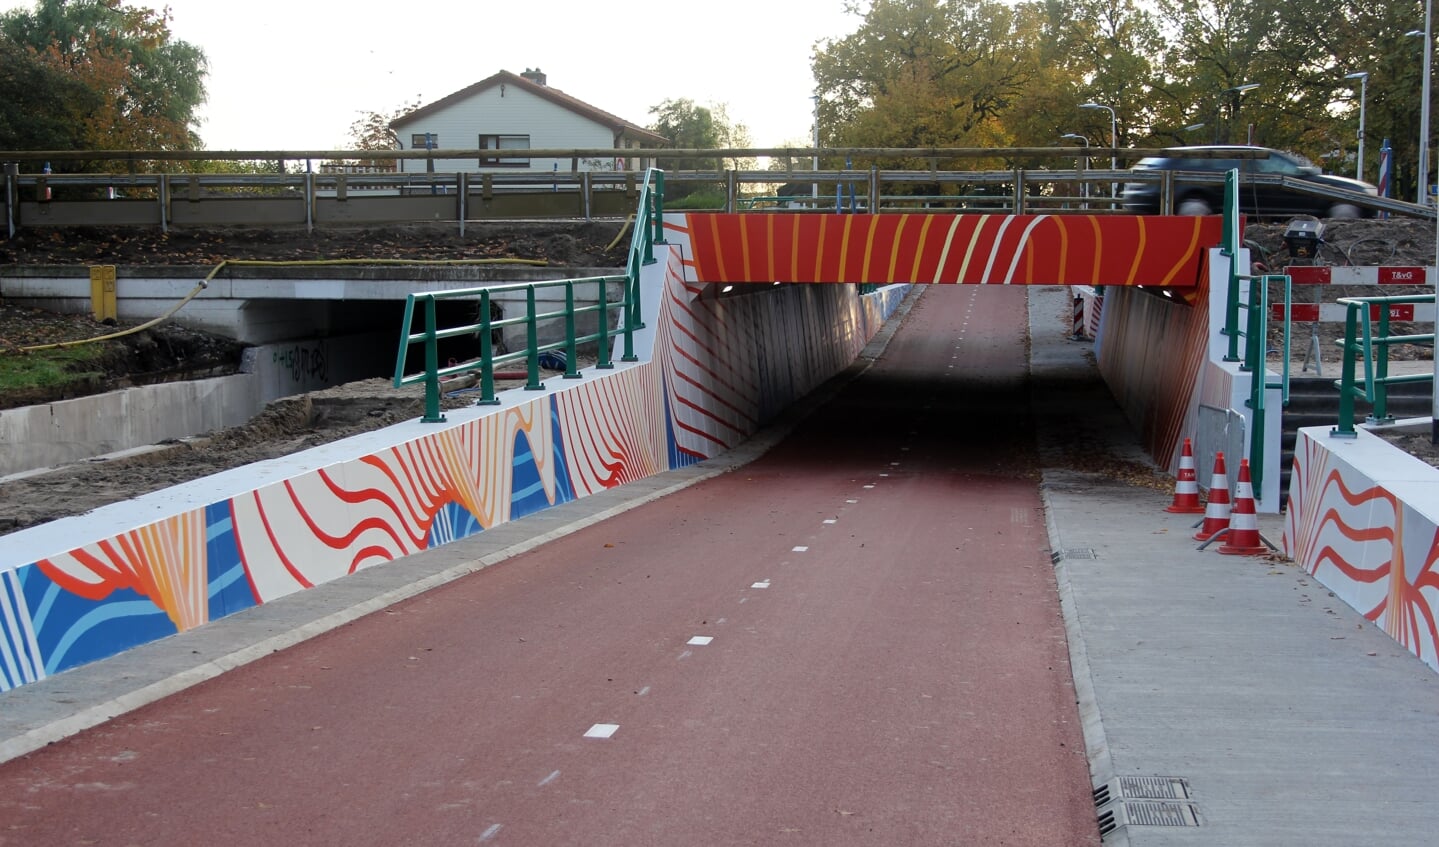 De ontwerper liet zich bij de noodzakelijke verbreding van het fietstunneltje inspireren door het KNMI bij het ontwerp voor de tunnel. [foto Reyn Schuurman]